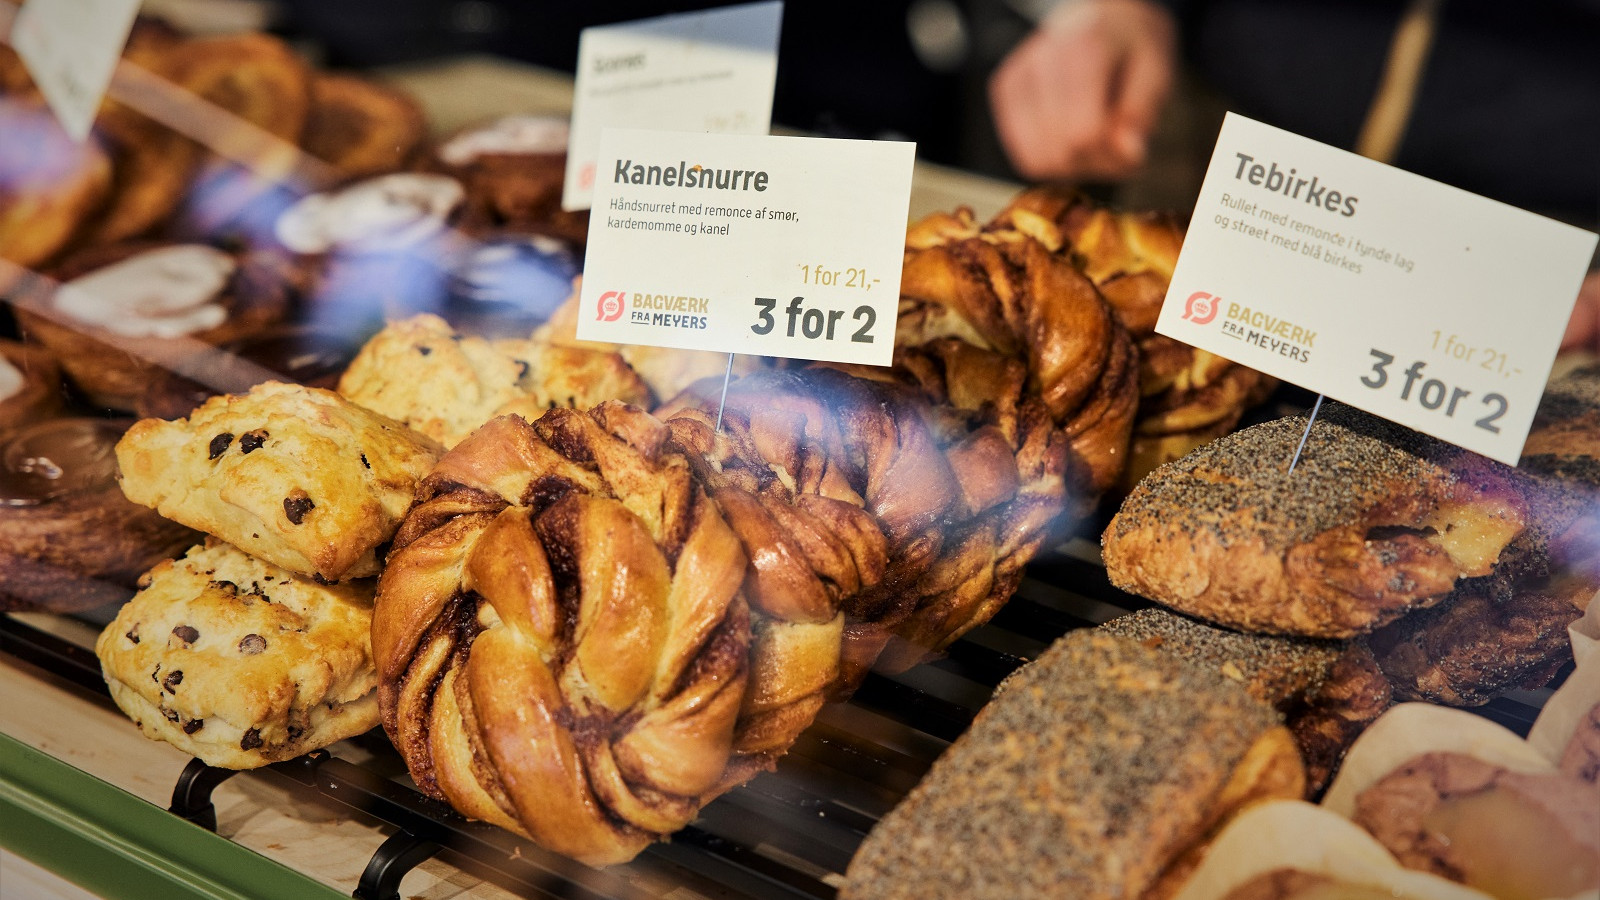 Kanelsnurrer, som er et af Meyers signaturprodukter, er blandt de 23 økologiske boller, brød og kager, som skal være med til at gøre Q8 til danskernes foretrukne valg, og kunderne tager godt imod det nye initiativ, oplyser Q8